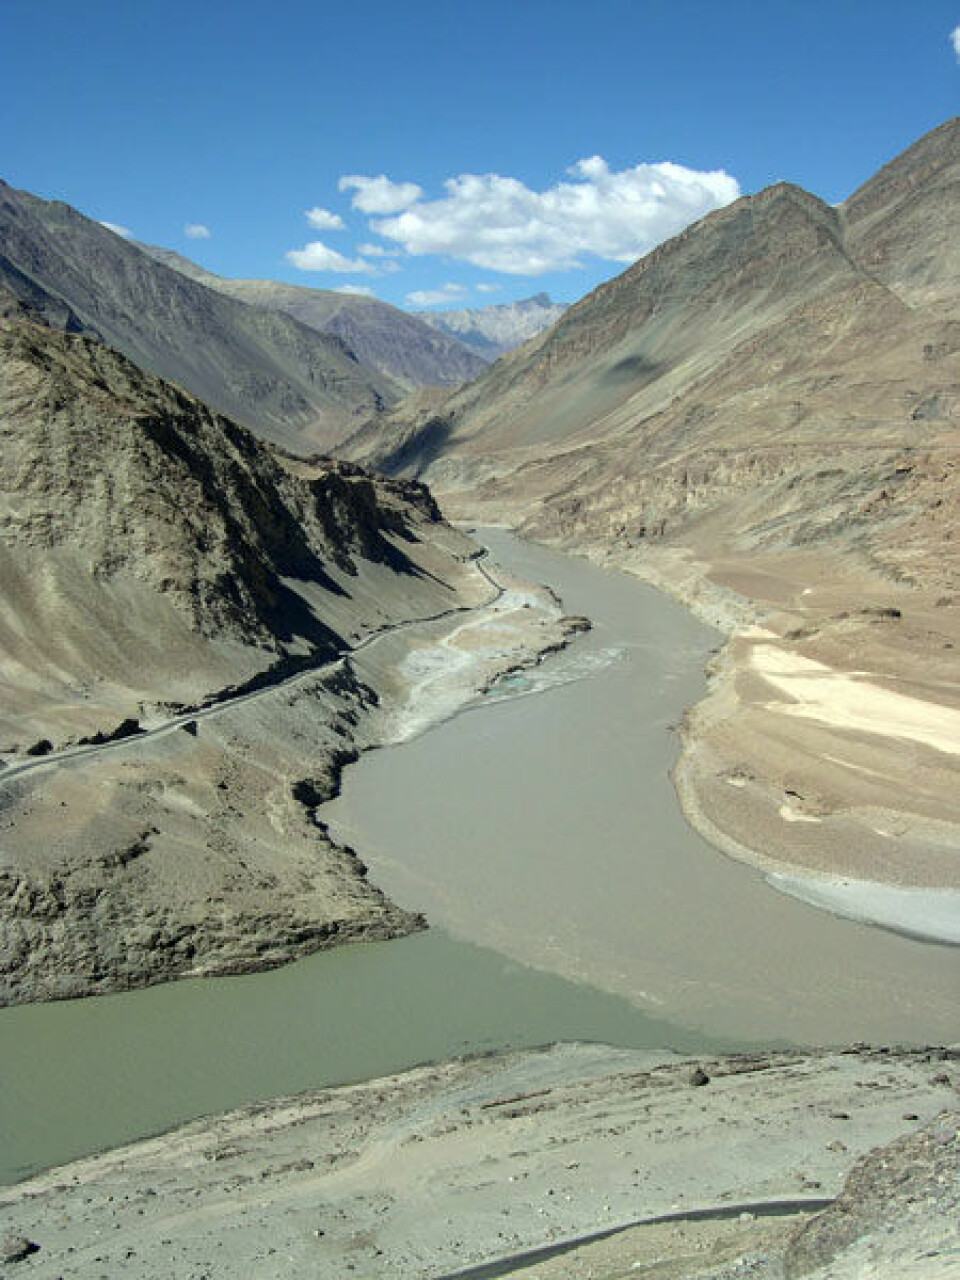 Induselven regnes for å være Pakistans livsnerve fordi den strømmer fra fjellene gjennom hele landet med rent smeltevann. Problemet er at elven har det med å flyte over sine bredder på grunn av monsunregn. (Foto: Wikimedia Commons)